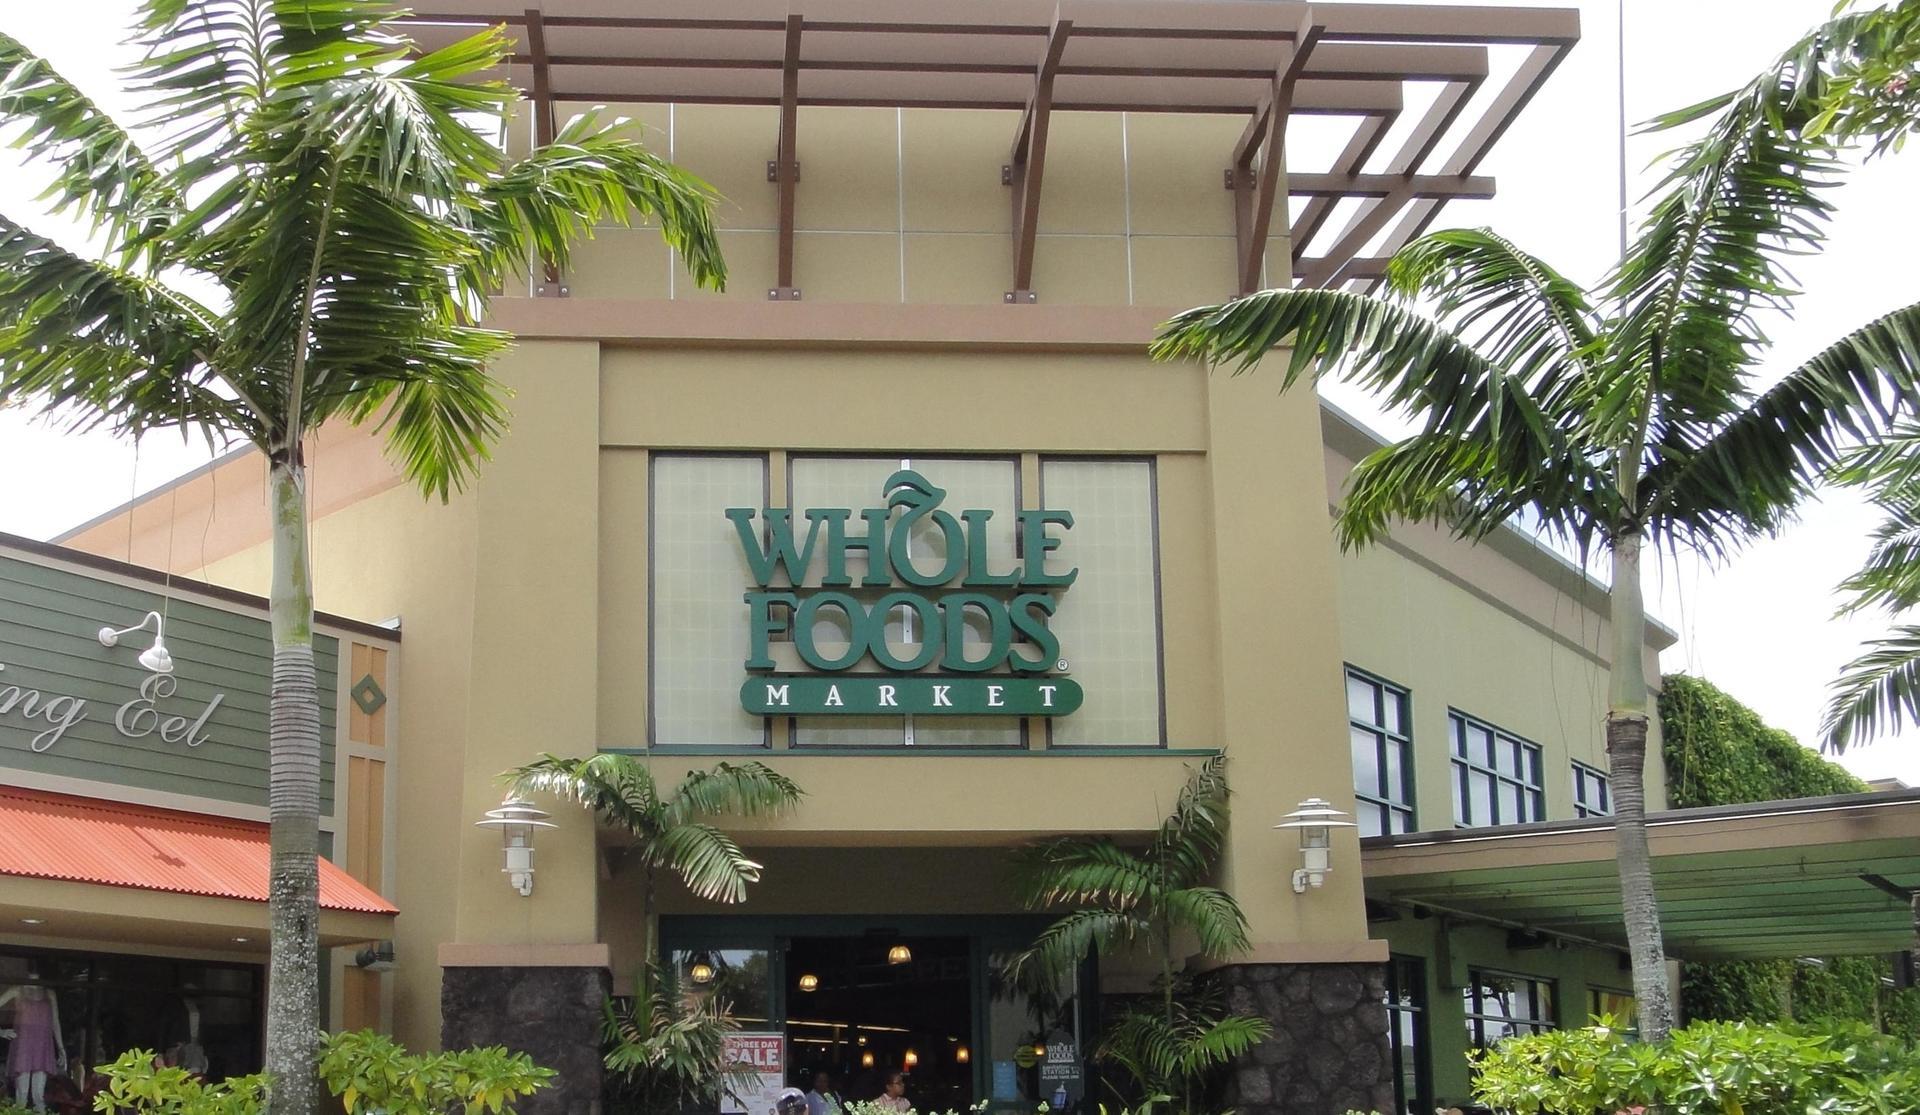 カイルア ザ バスでの行き方 オーガニックのホールフーズマーケット Whole Foods Market In カイルア ハワイ旅行記